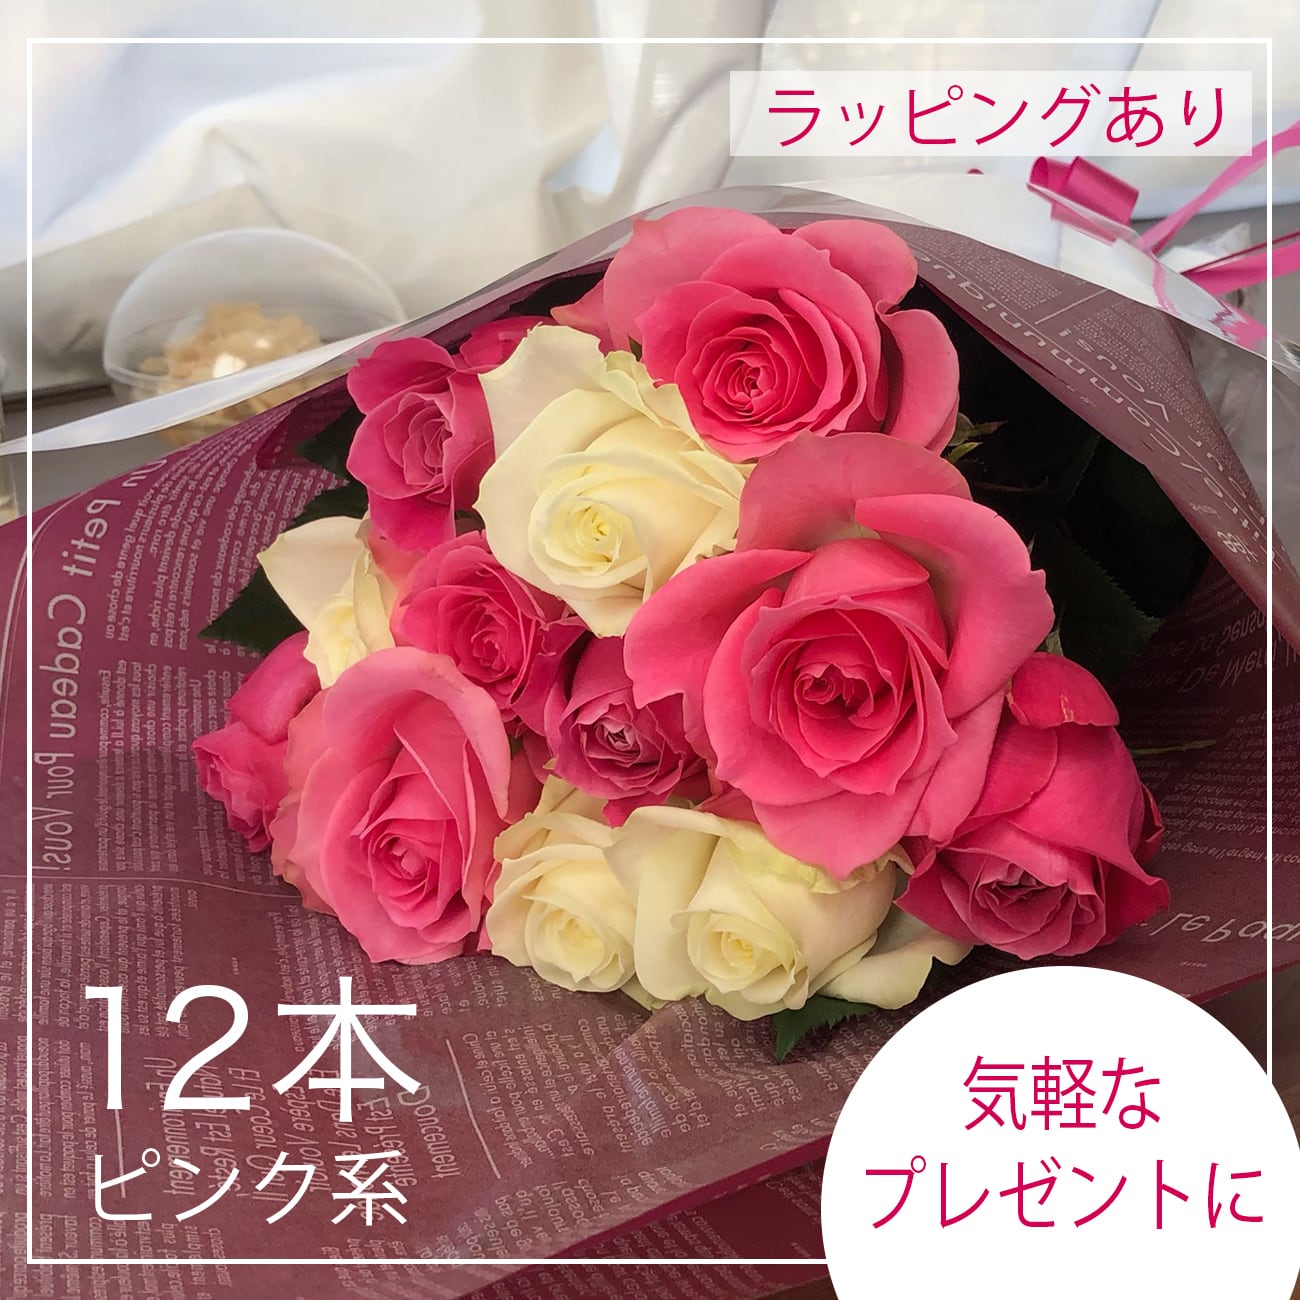 贈答用 薔薇の花束12本ピンク系